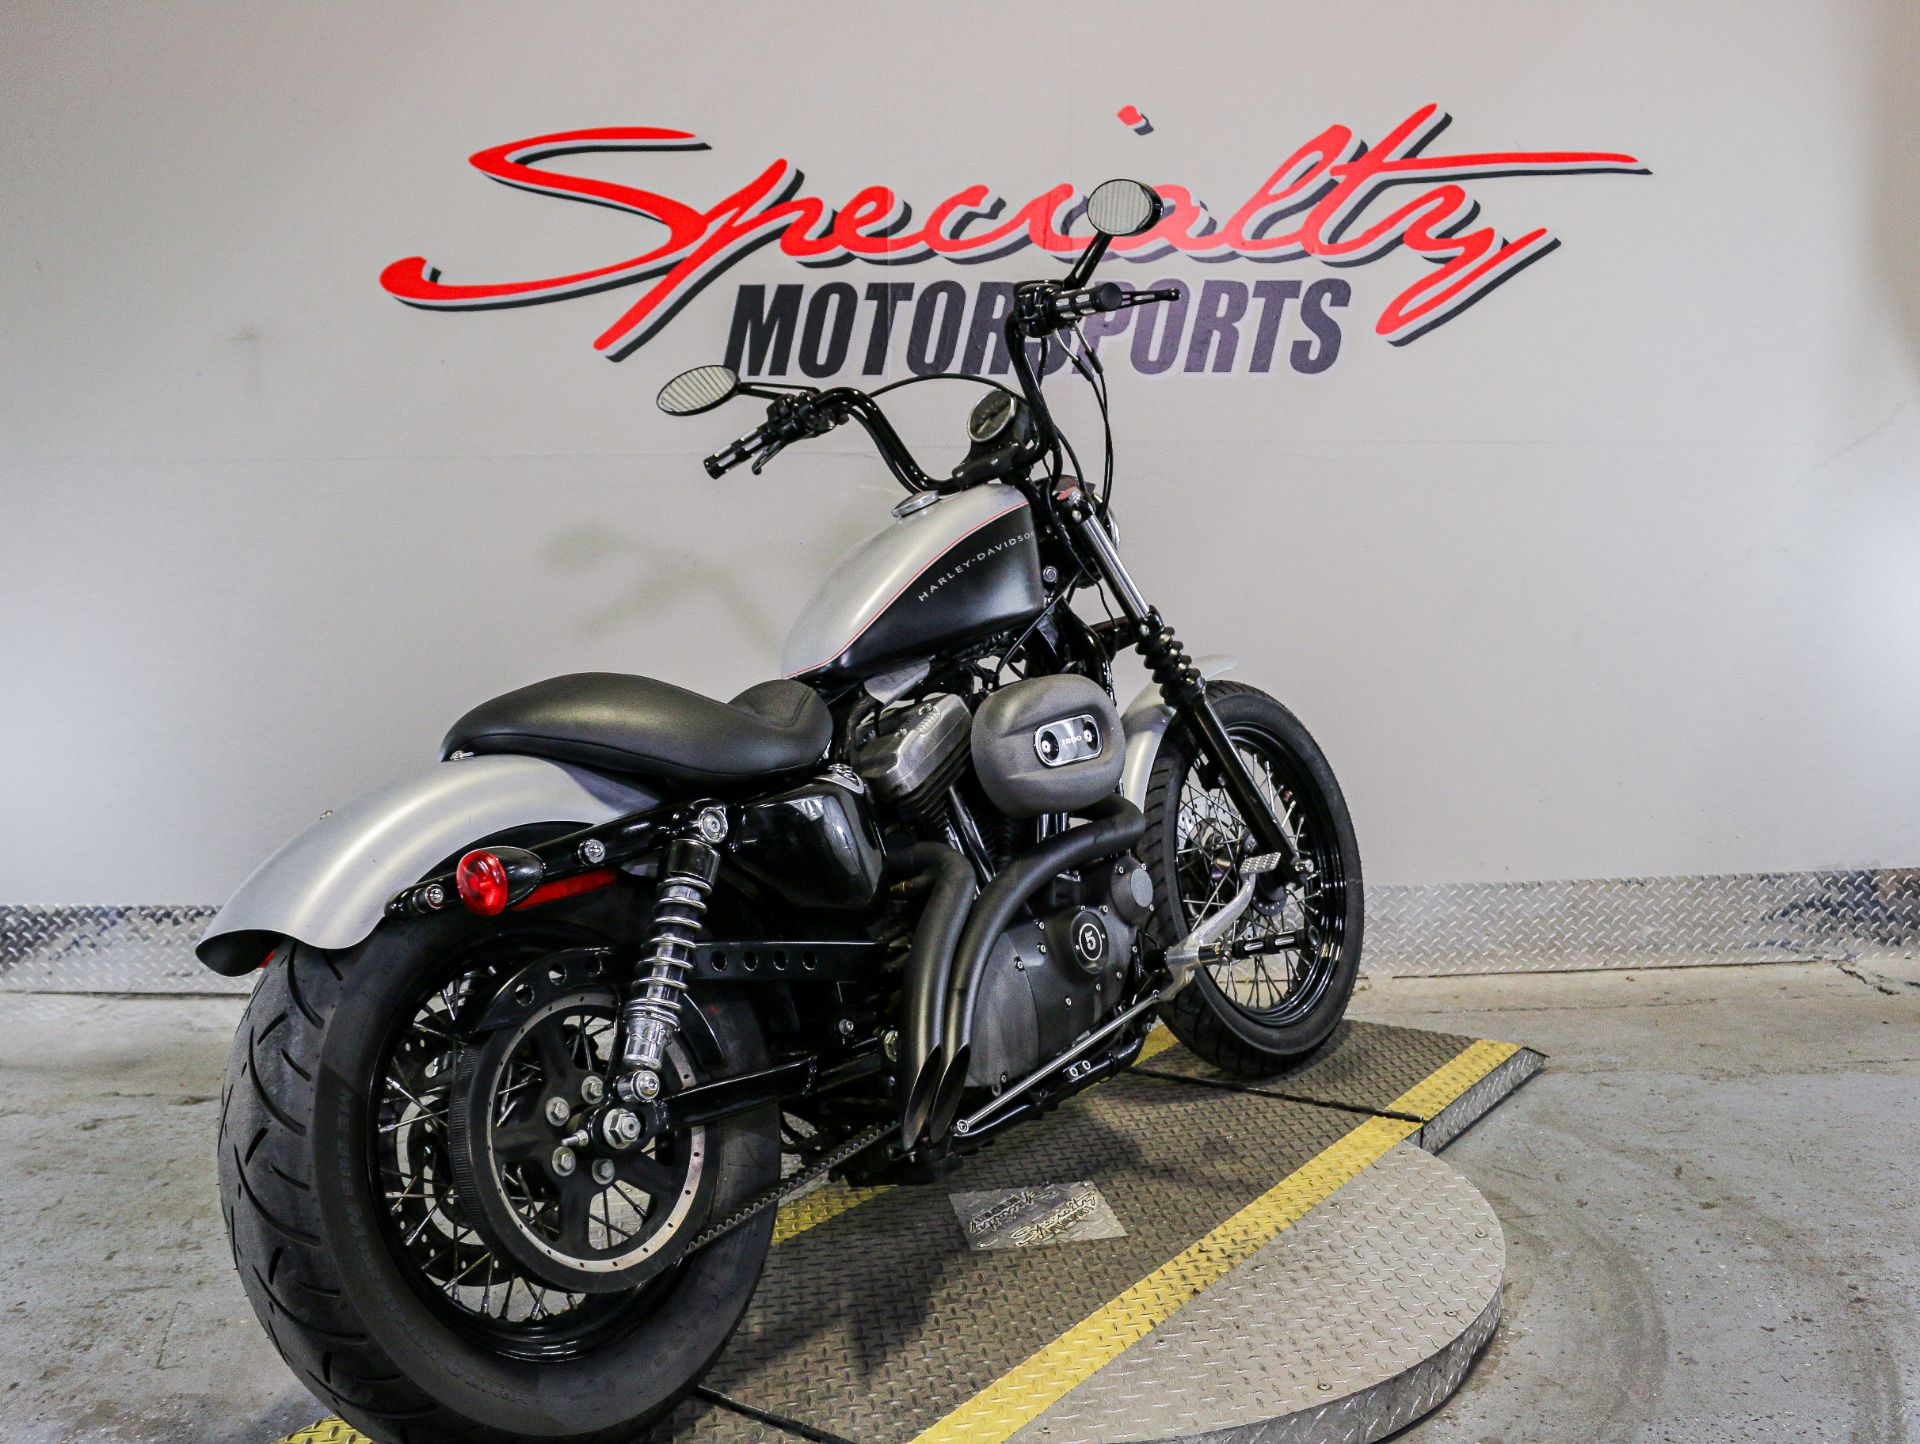 2007 Harley-Davidson Sportster® 1200 Nightster™ in Sacramento, California - Photo 2